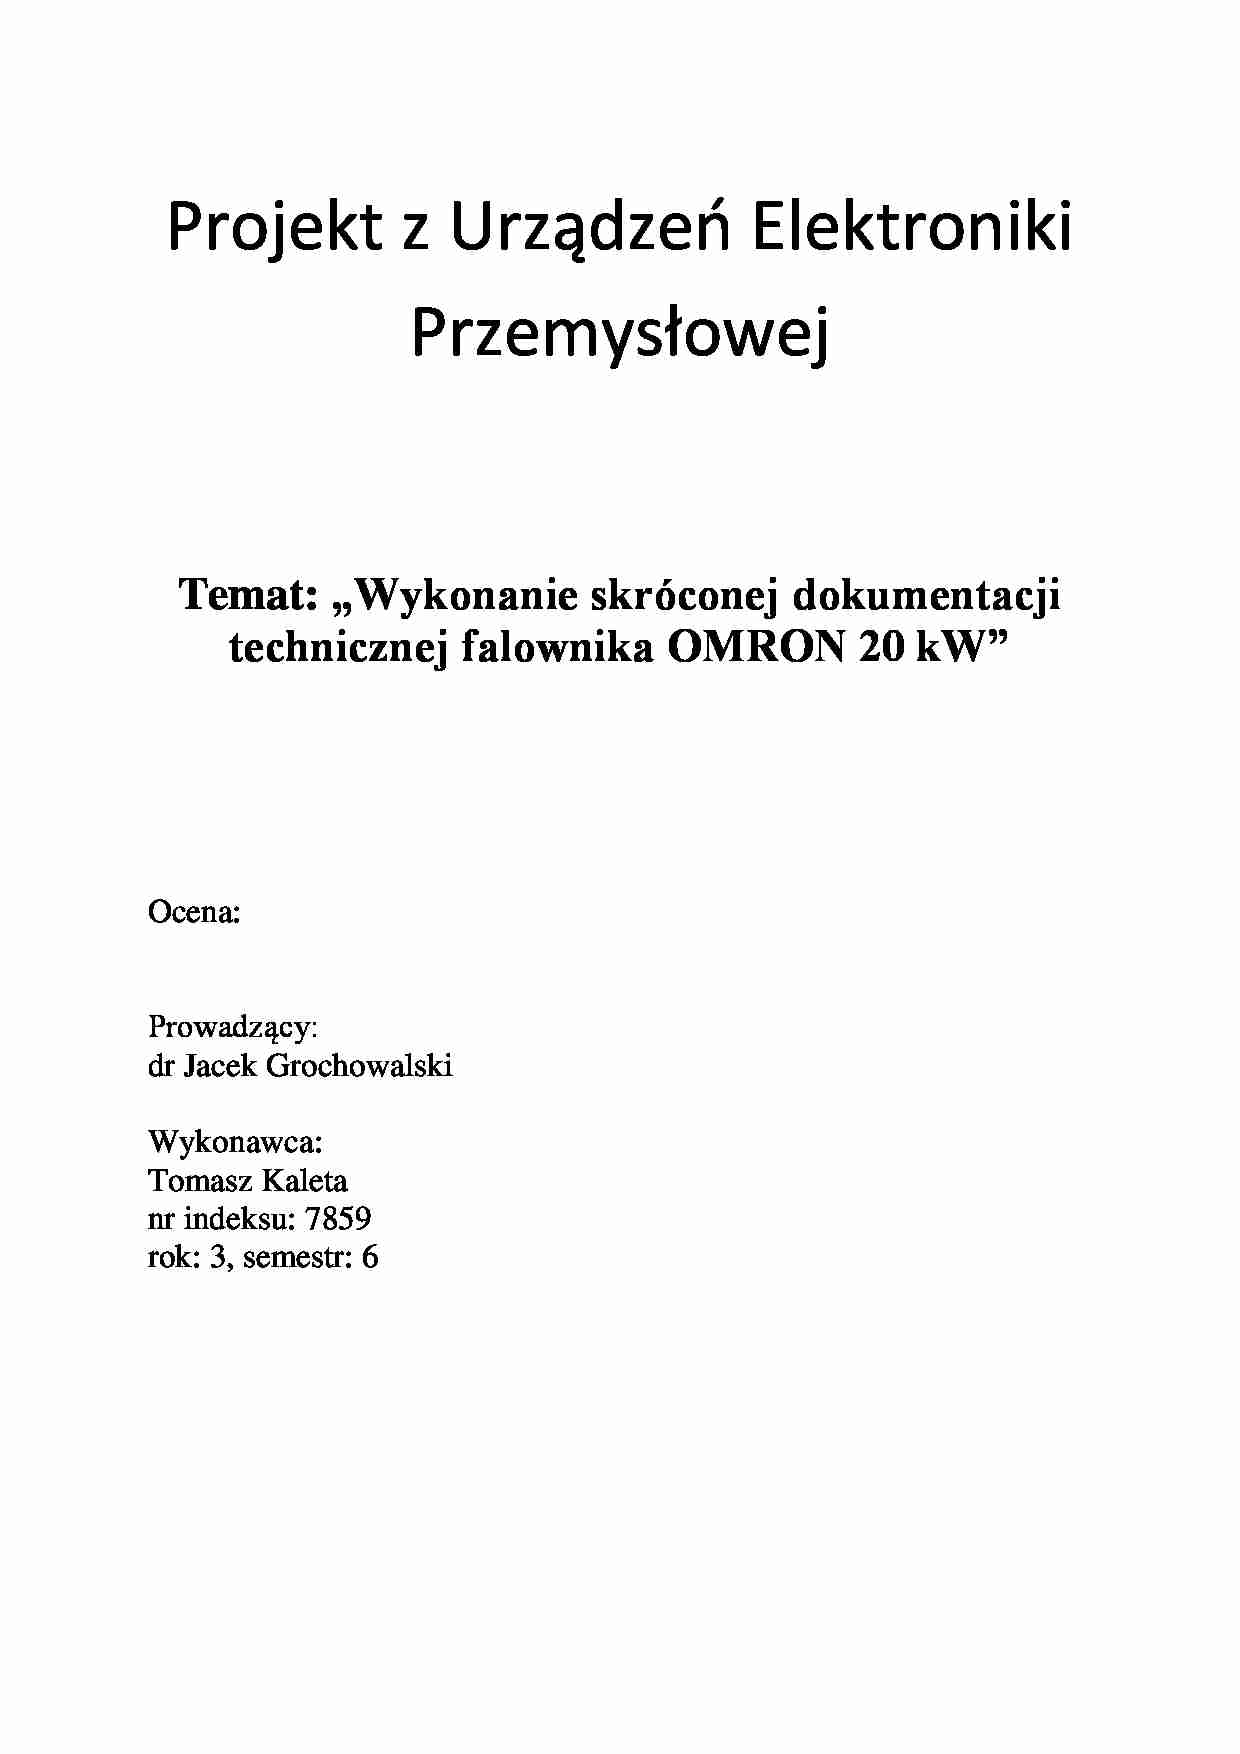 Wykonanie skróconej dokumentacji technicznej falownika OMRON 20 kW-projekt - strona 1